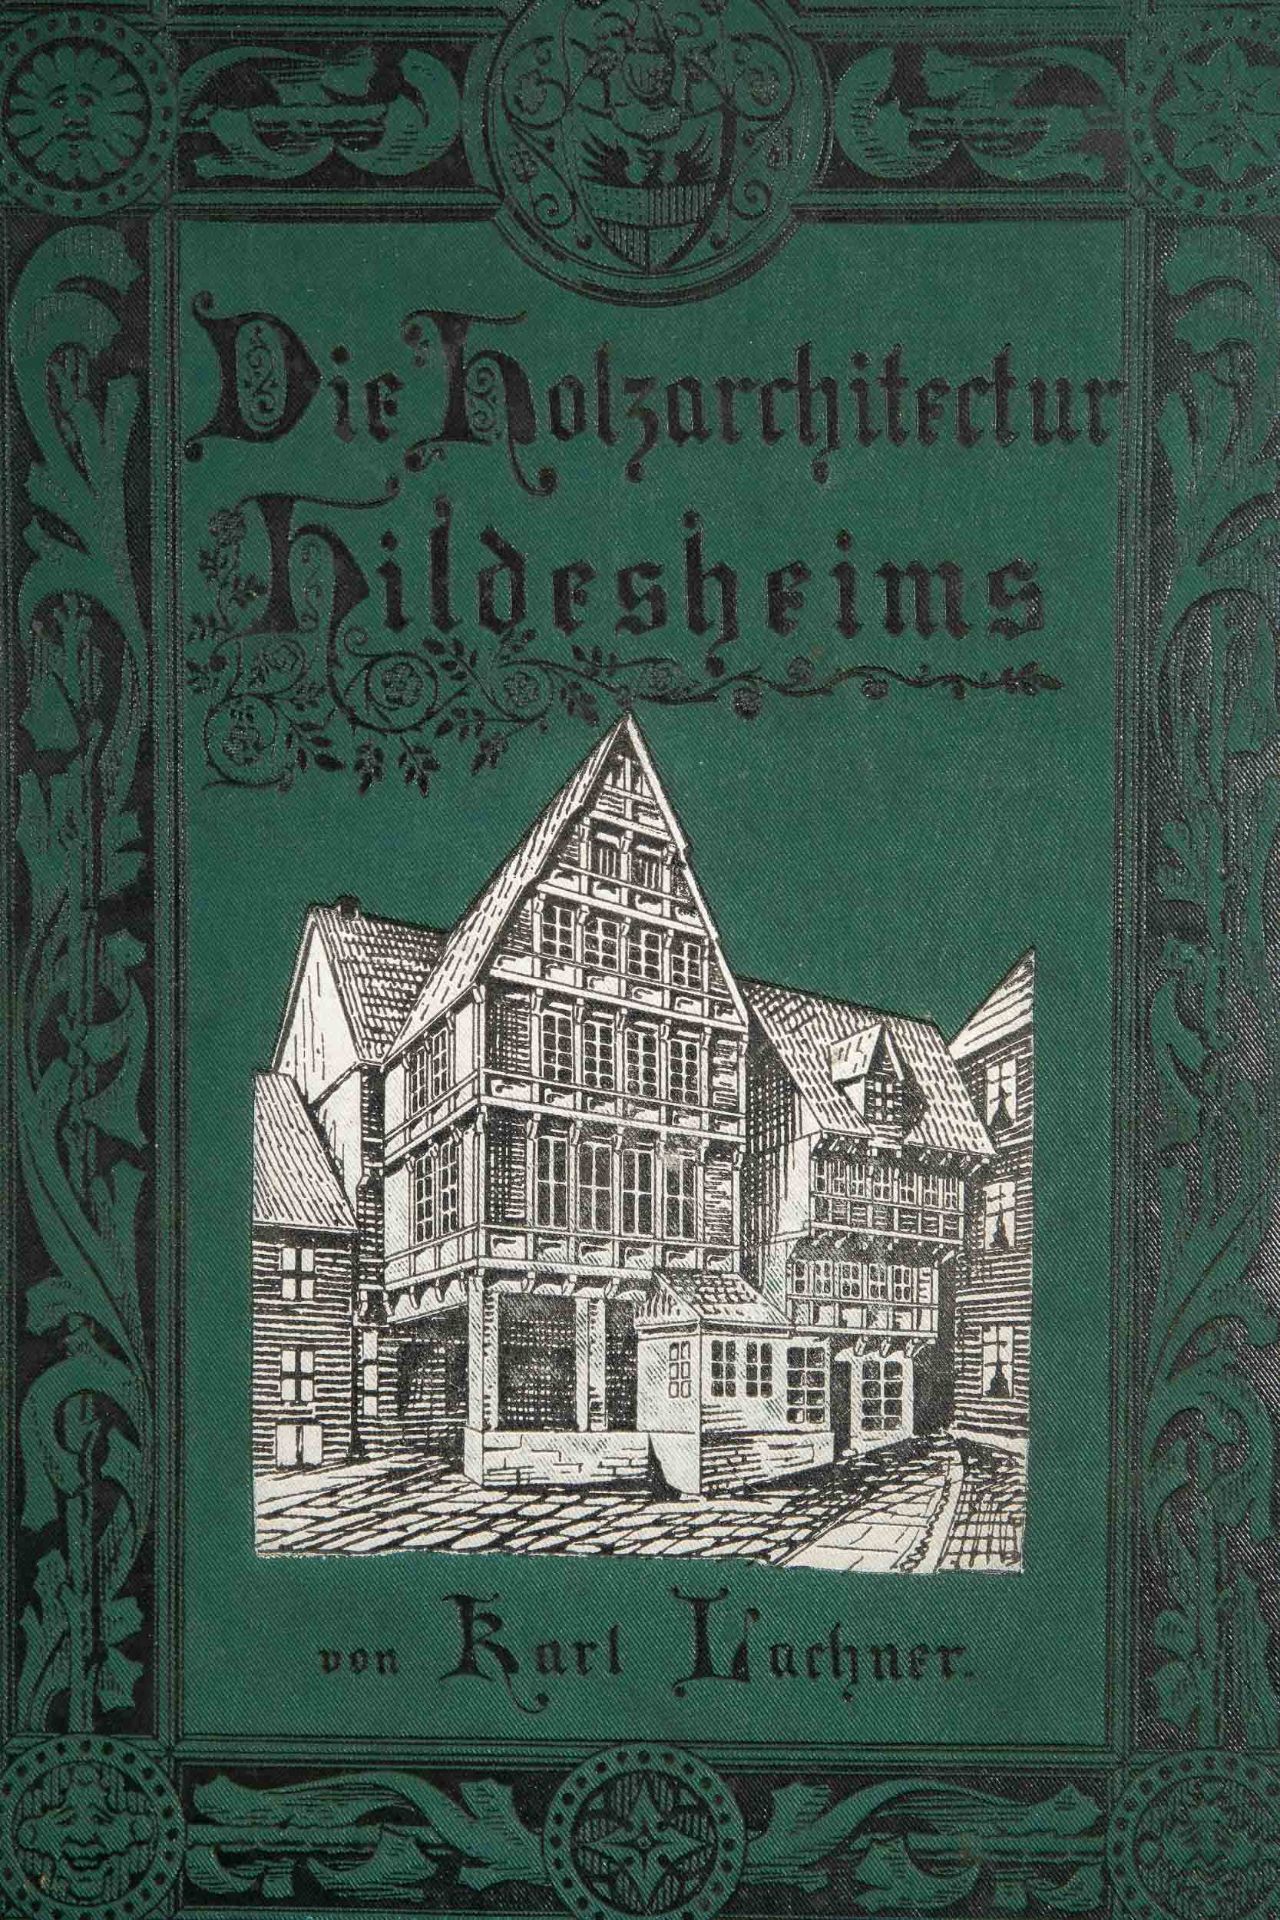 "Die Holzarchitektur Hildesheims" (als Buch & Bild) aus dem Besitz des Architekten W. Bleckmann. Bu - Image 9 of 13